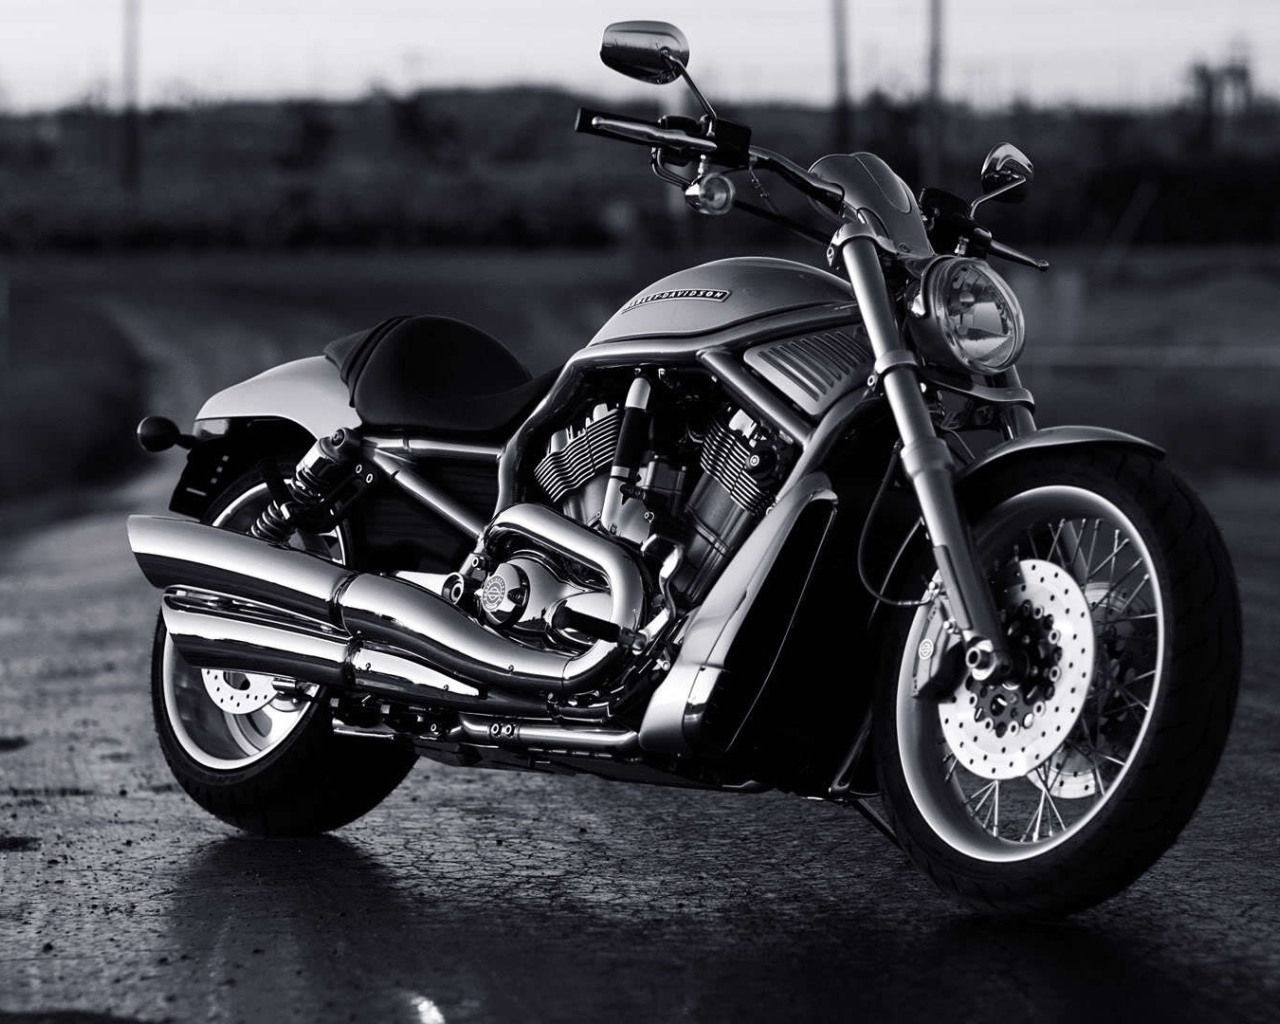 Новый надежный мотоцикл Harley-Davidson V-Rod Muscle